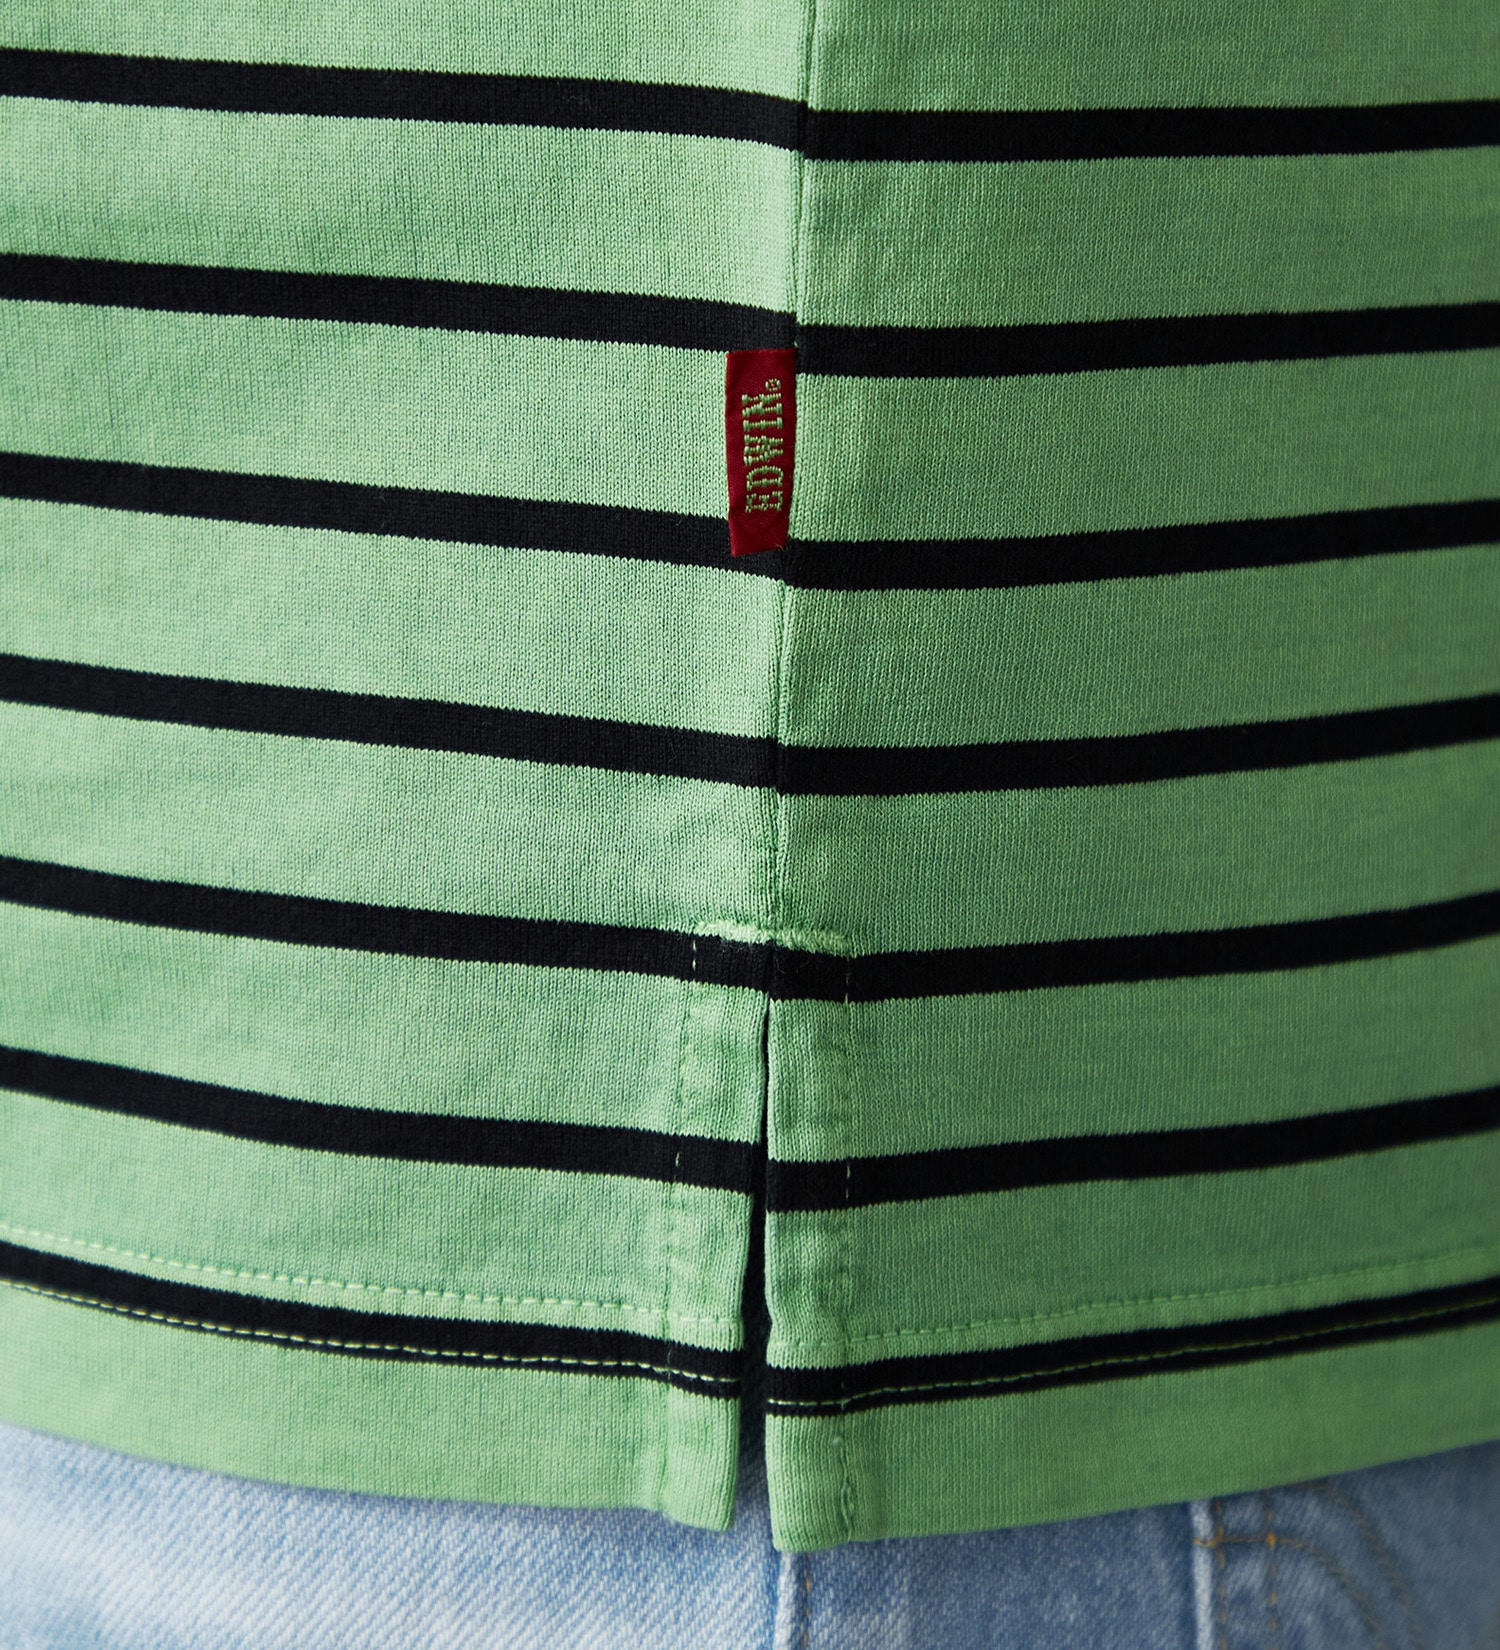 EDWIN(エドウイン)のピグメント加工ボーダーTシャツ|トップス/Tシャツ/カットソー/メンズ|グリーン